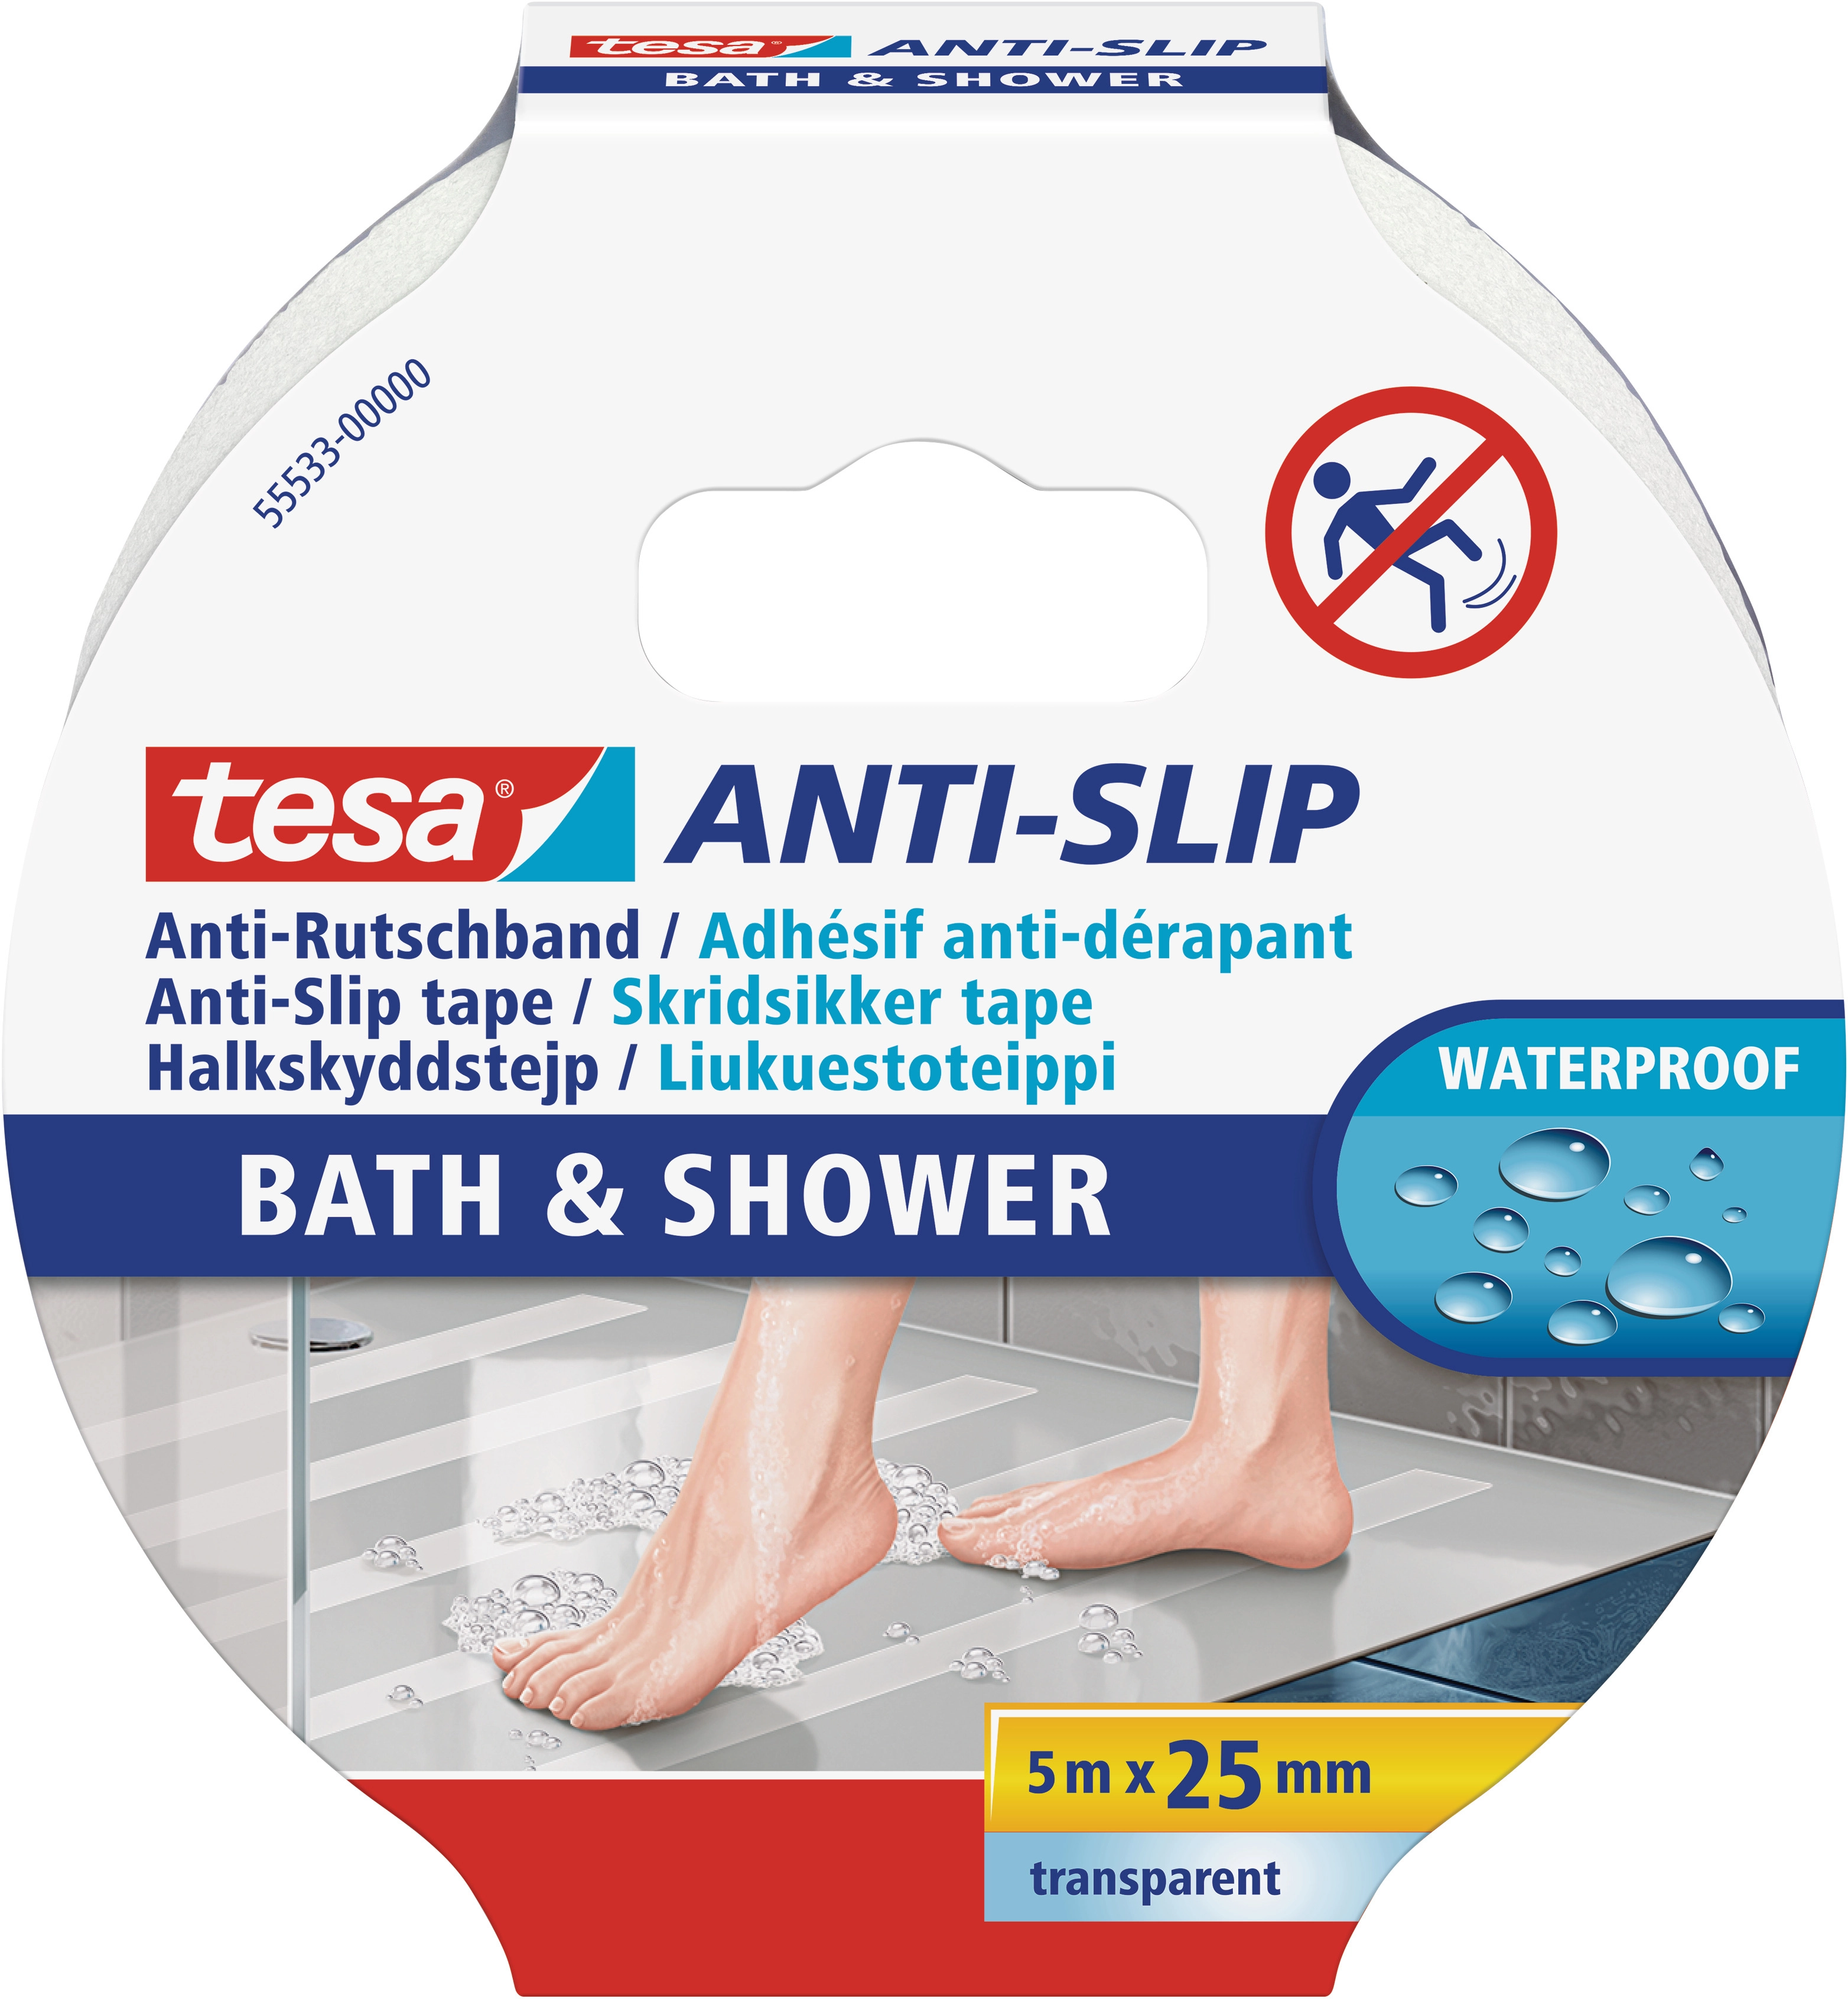 Tesa Anti-Rutschband Bad und Dusche Transparent 5 m x 25 mm kaufen bei OBI